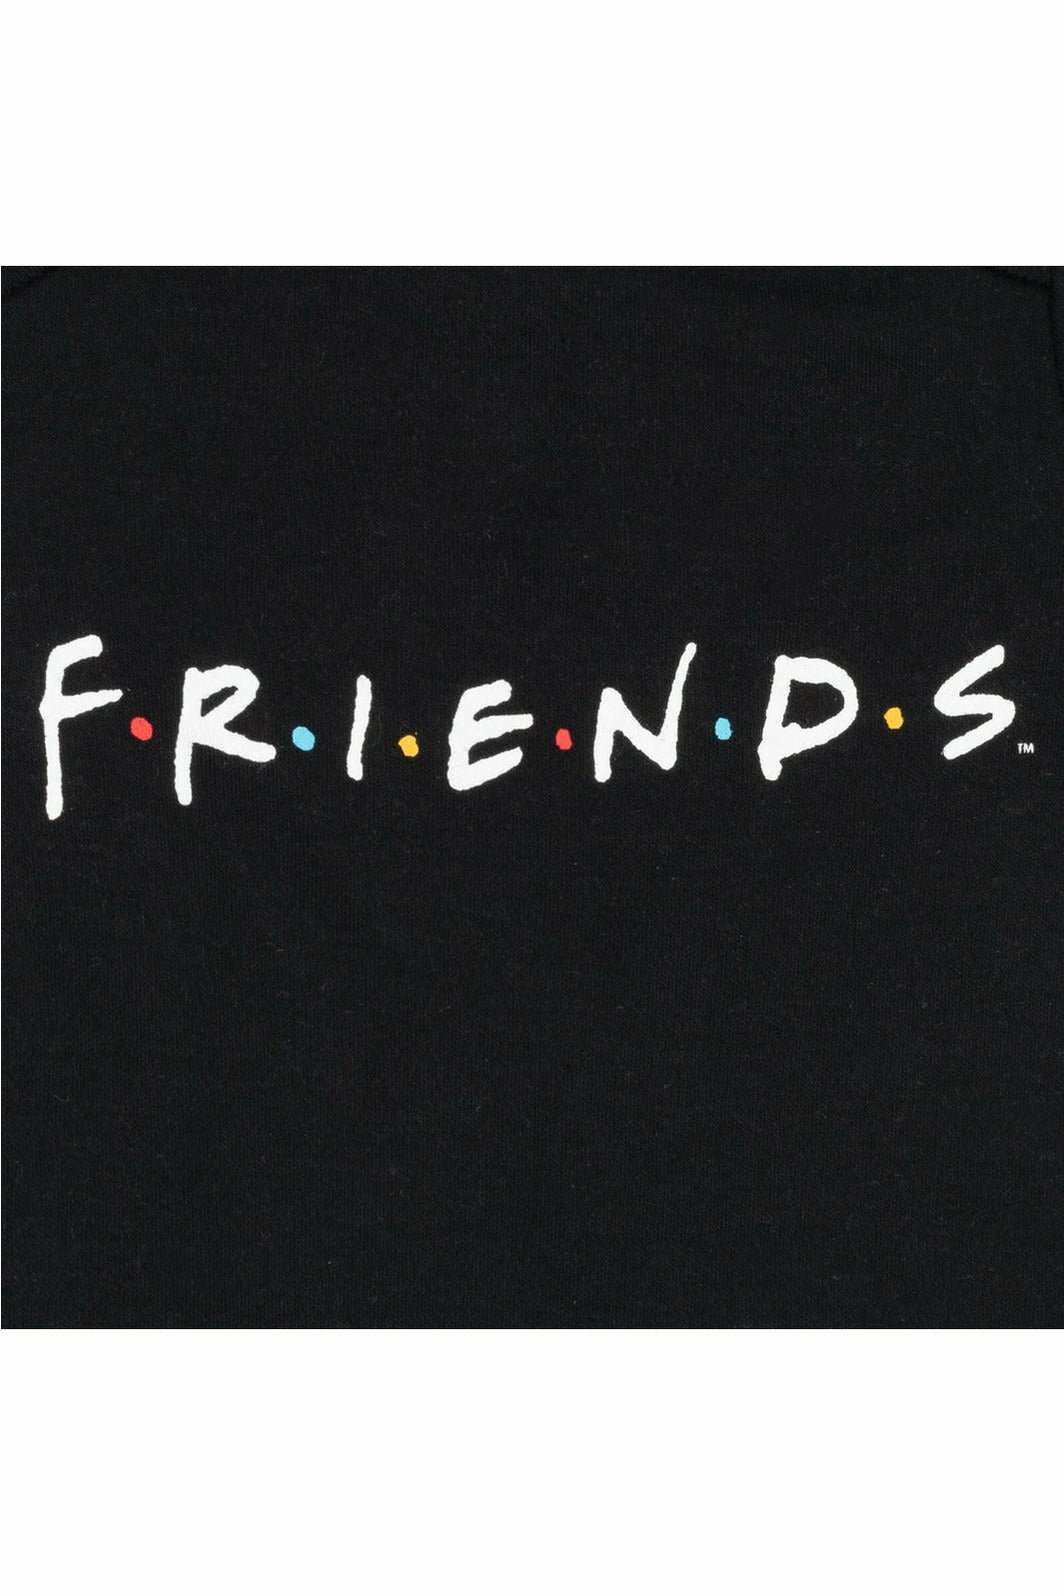 FRIENDS 3 Piece Outfit Set: Bodysuit Pants Hat - imagikids